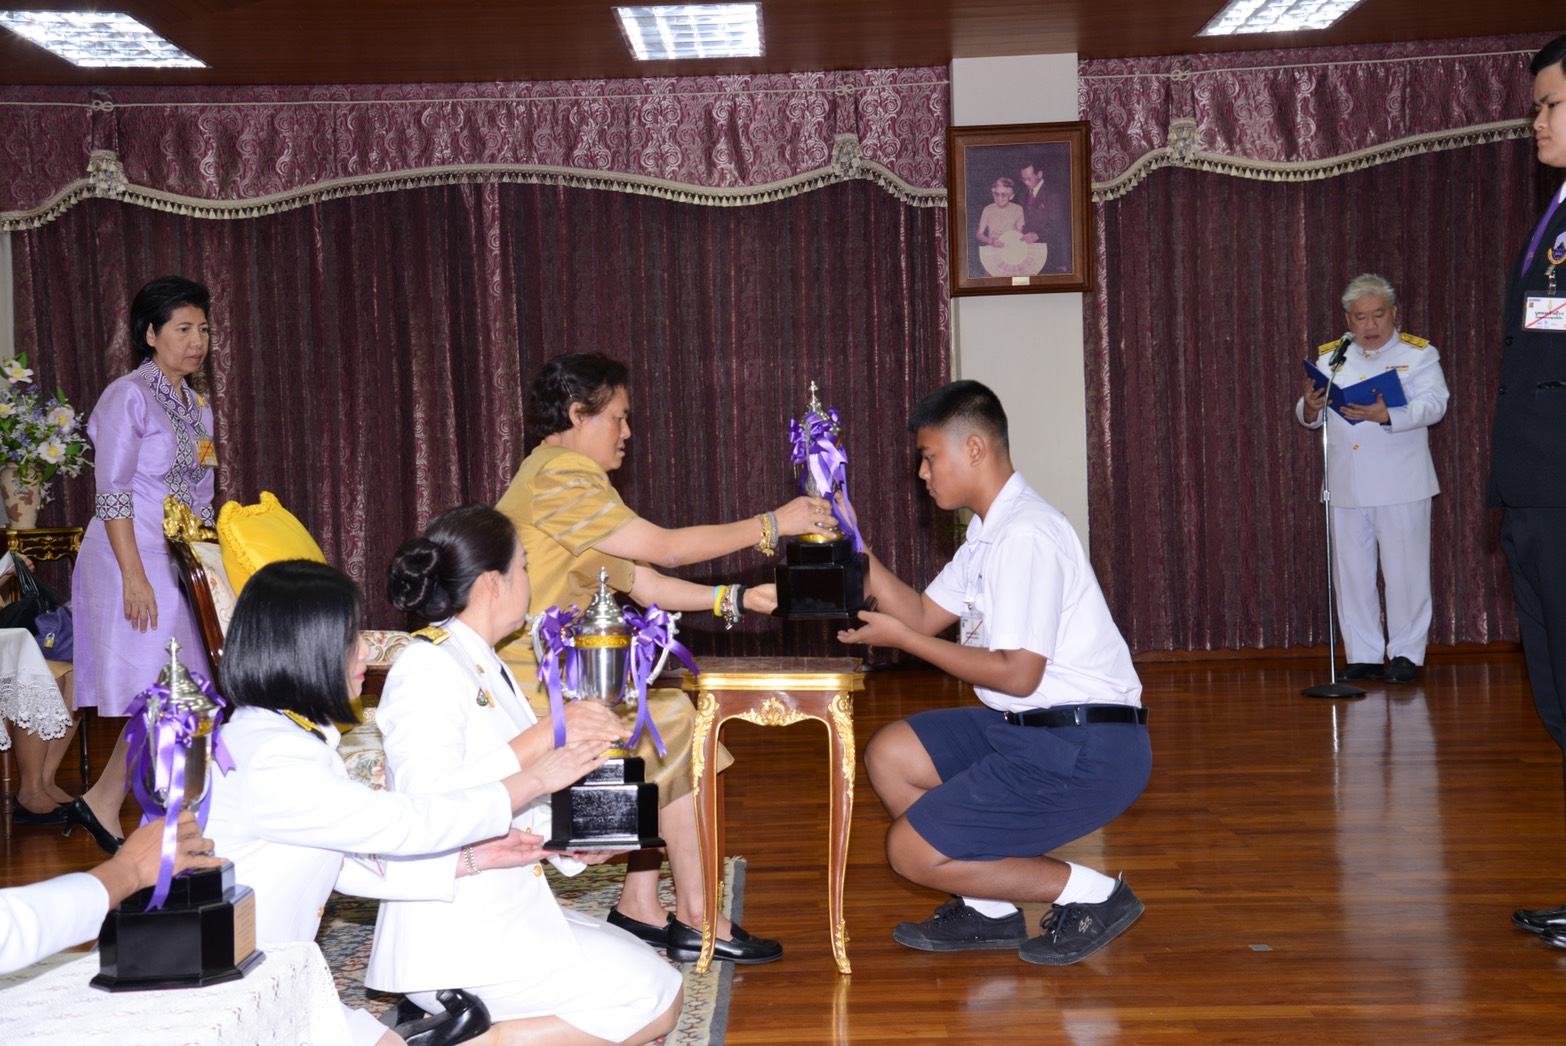 🏆 นายภูวเนตร รีมูล นักเรียนโรงเรียนอุตรดิตถ์ เข้ารับพระราชทานถ้วยรางวัลเยาวชนต้นแบบด้านดนตรีไทย ประจำปี 2562 ระดับภาค 🏆